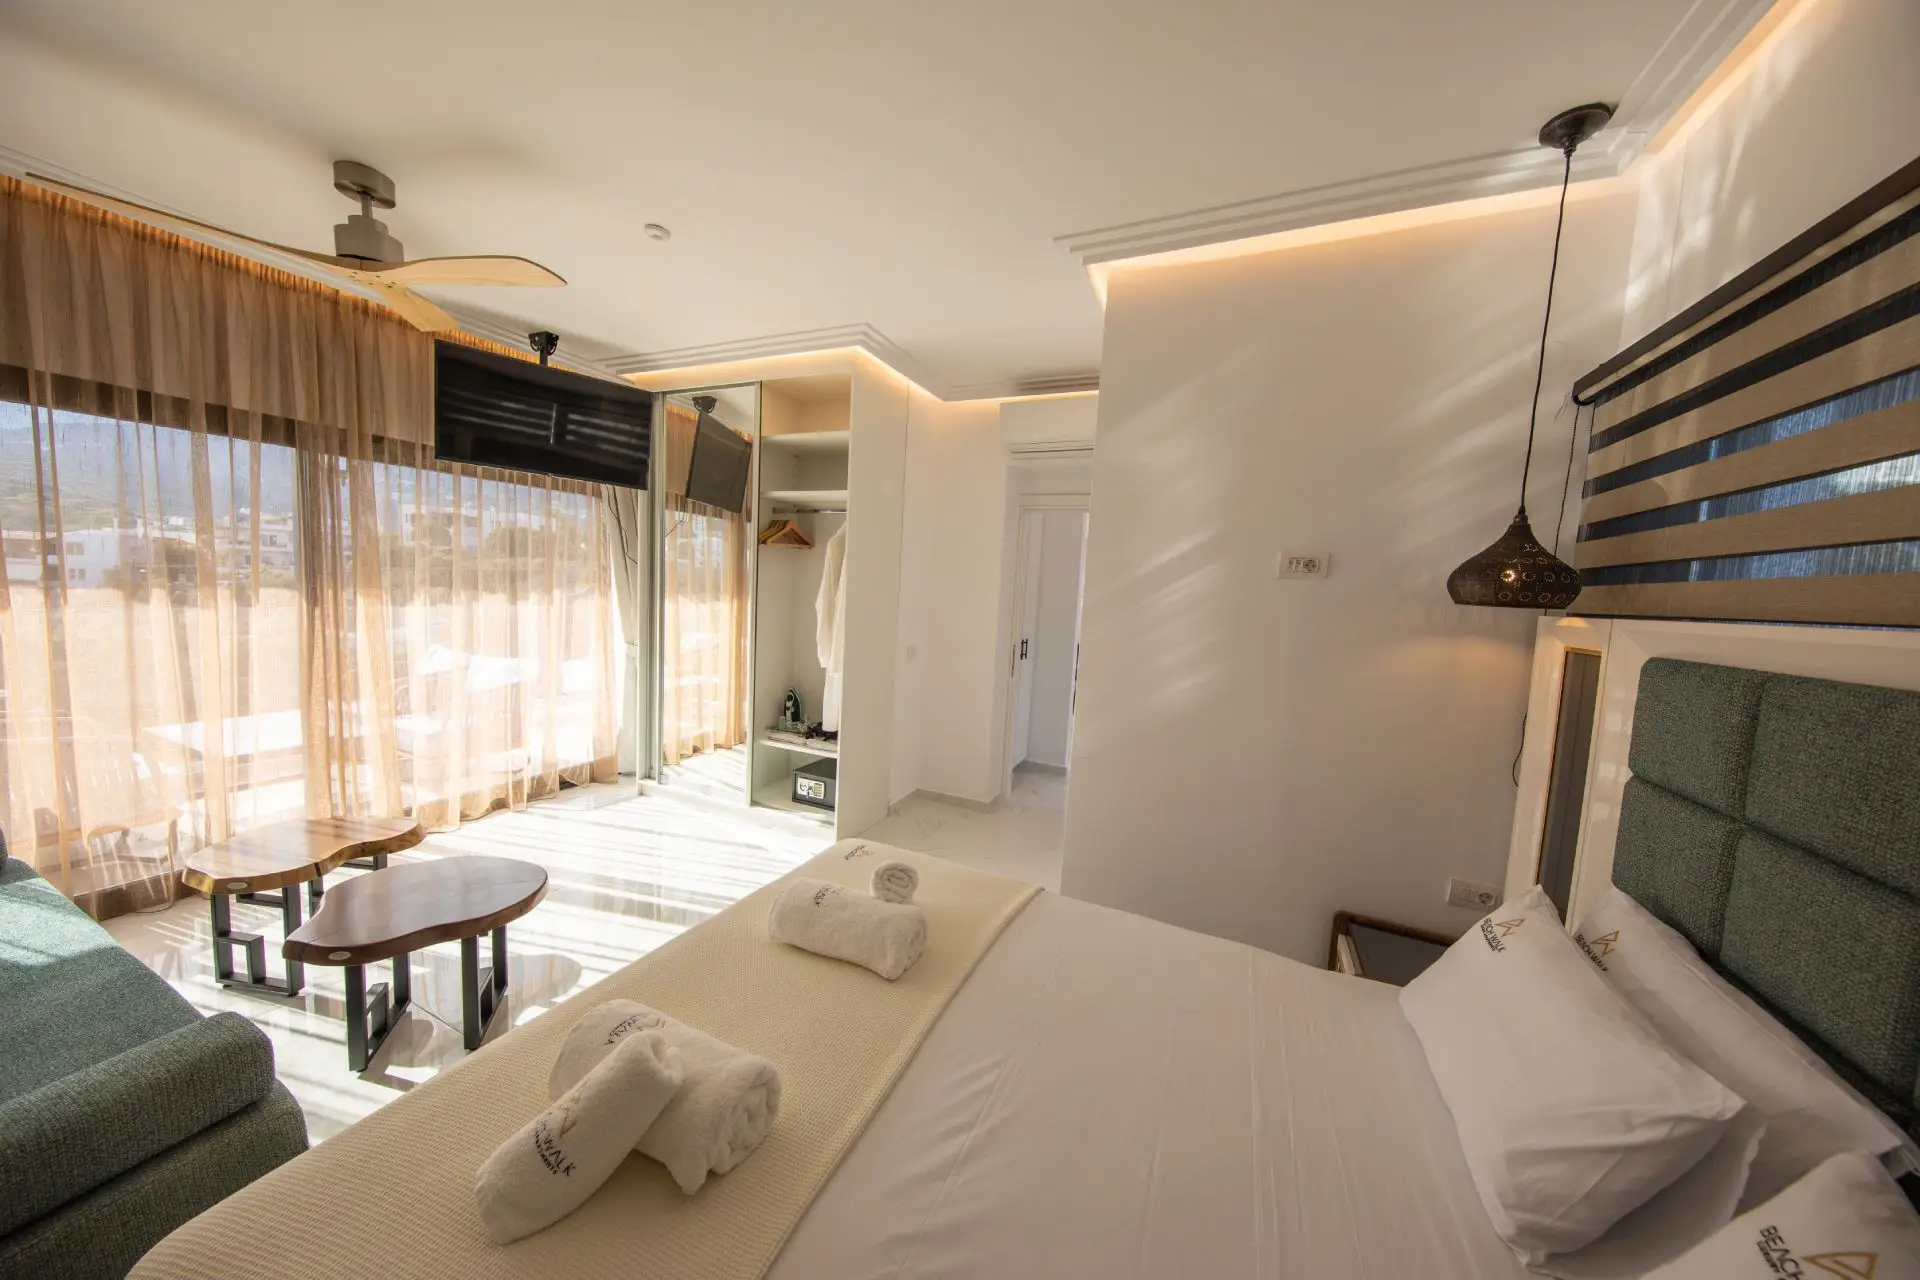 Διαμέρισμα με Ένα Υπνοδωμάτιο και Θέμα στη Θάλασσα - Beach Walk Διαμερίσματα Κρήτη